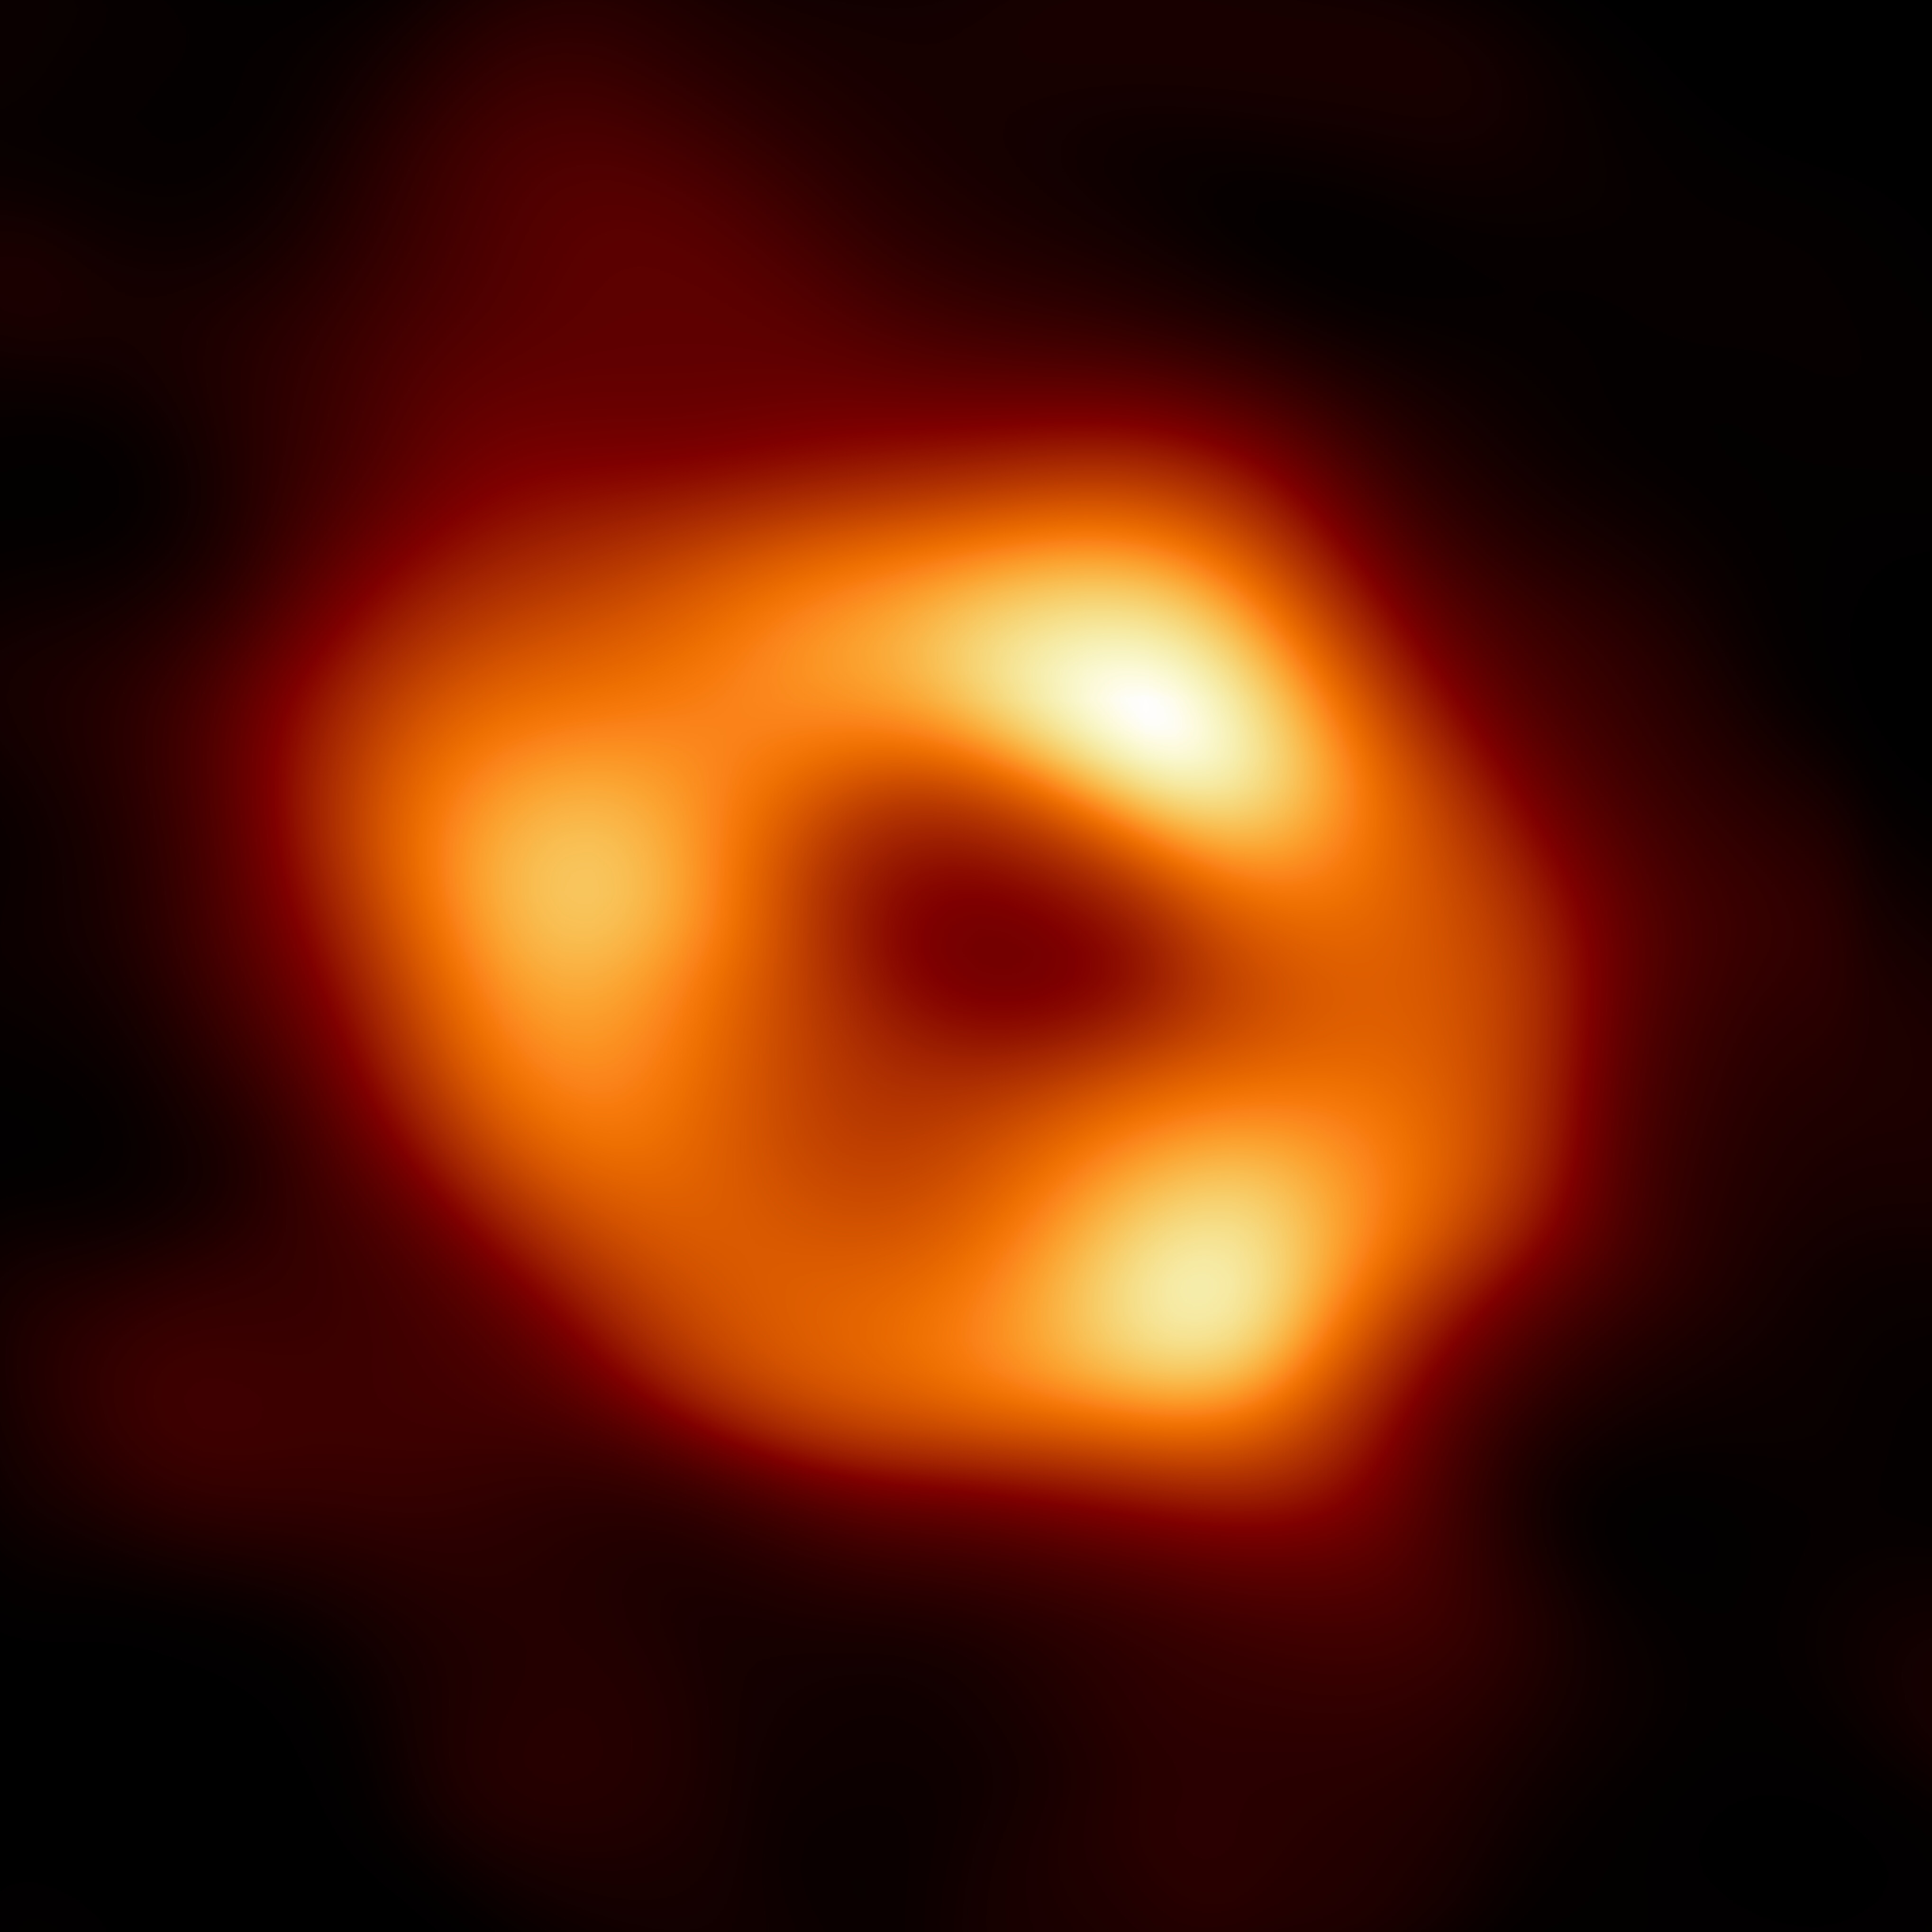 La nouvelle méthode trouvée par les chercheurs s'applique pour les systèmes binaires constitués de deux trous noirs supermassifs. Le trou noir central de la Voie lactée, sur cette image, ne serait pas détectable par cette technique. © Nasa